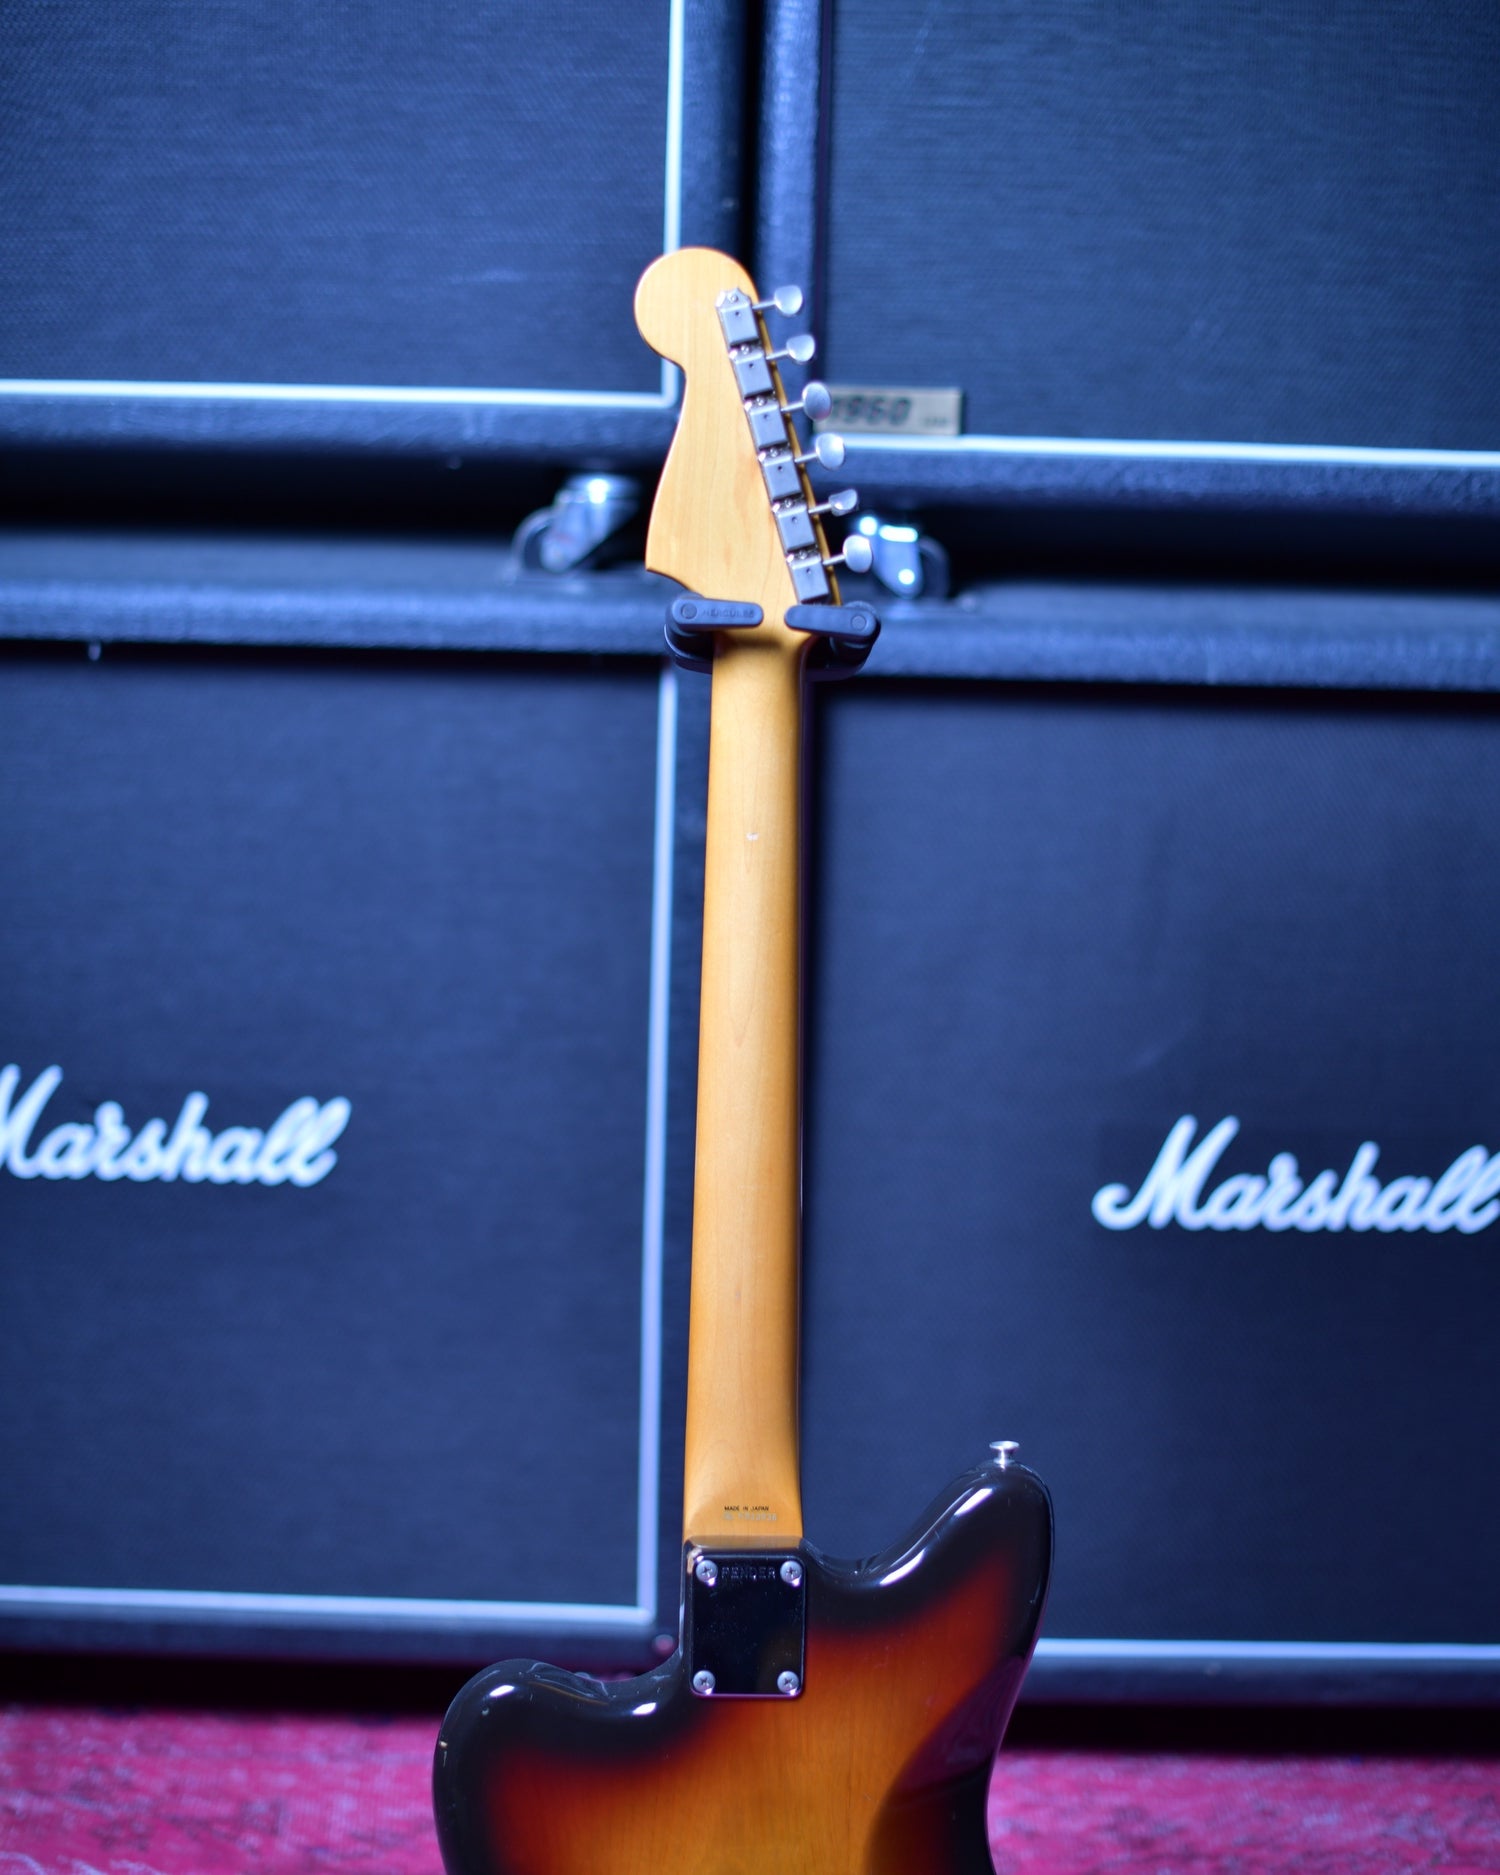 Fender Japan E-serial Jazzmaster MIJ Sunburst 80's